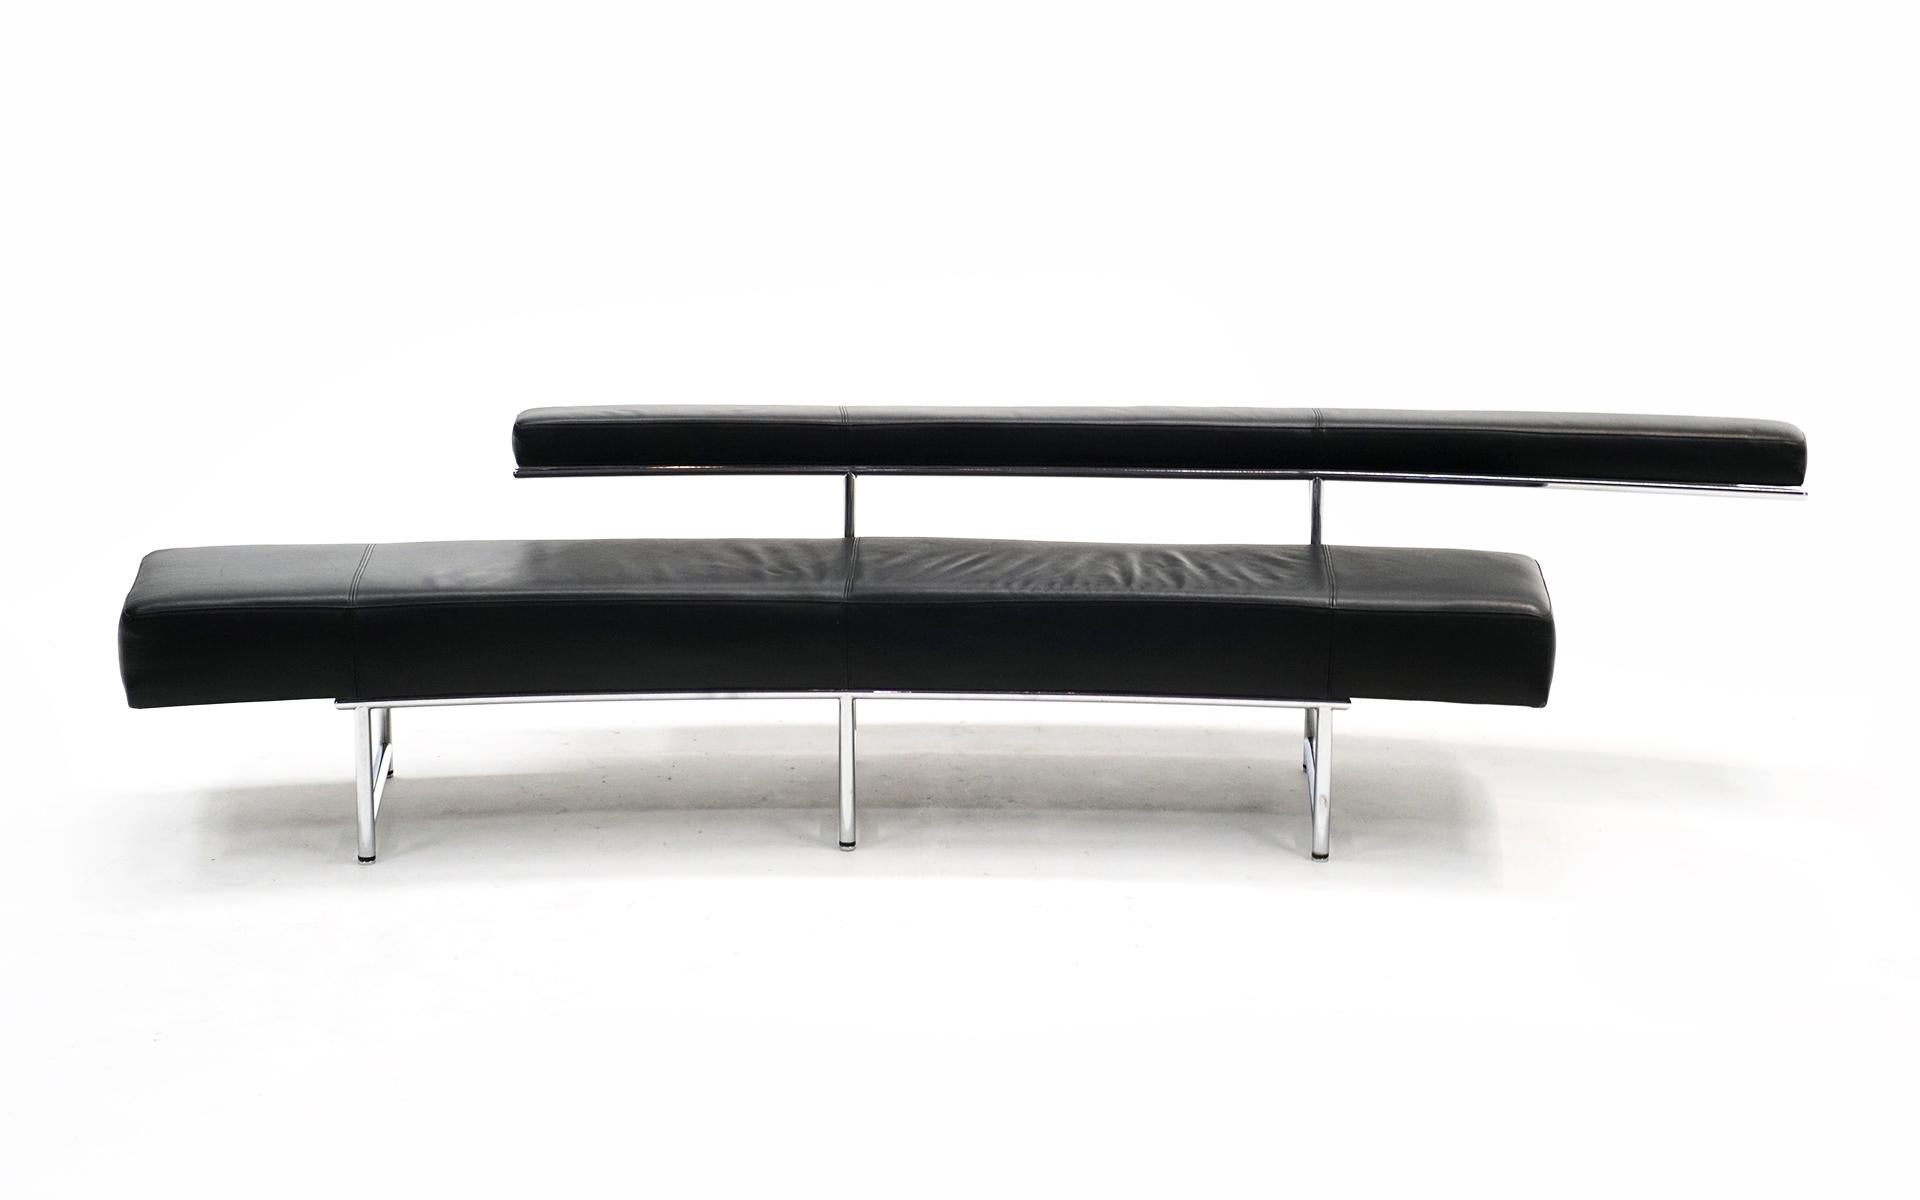 Monte Carlo Sofa, 1929 von Eileen Gray entworfen und in den 2000er Jahren von ClassiCon hergestellt. Geschwungene Form aus schwarzem Leder und Chromrohr. Dieses Exemplar wurde sehr wenig benutzt. Keine Kratzer, Risse, Schrammen oder Reparaturen an